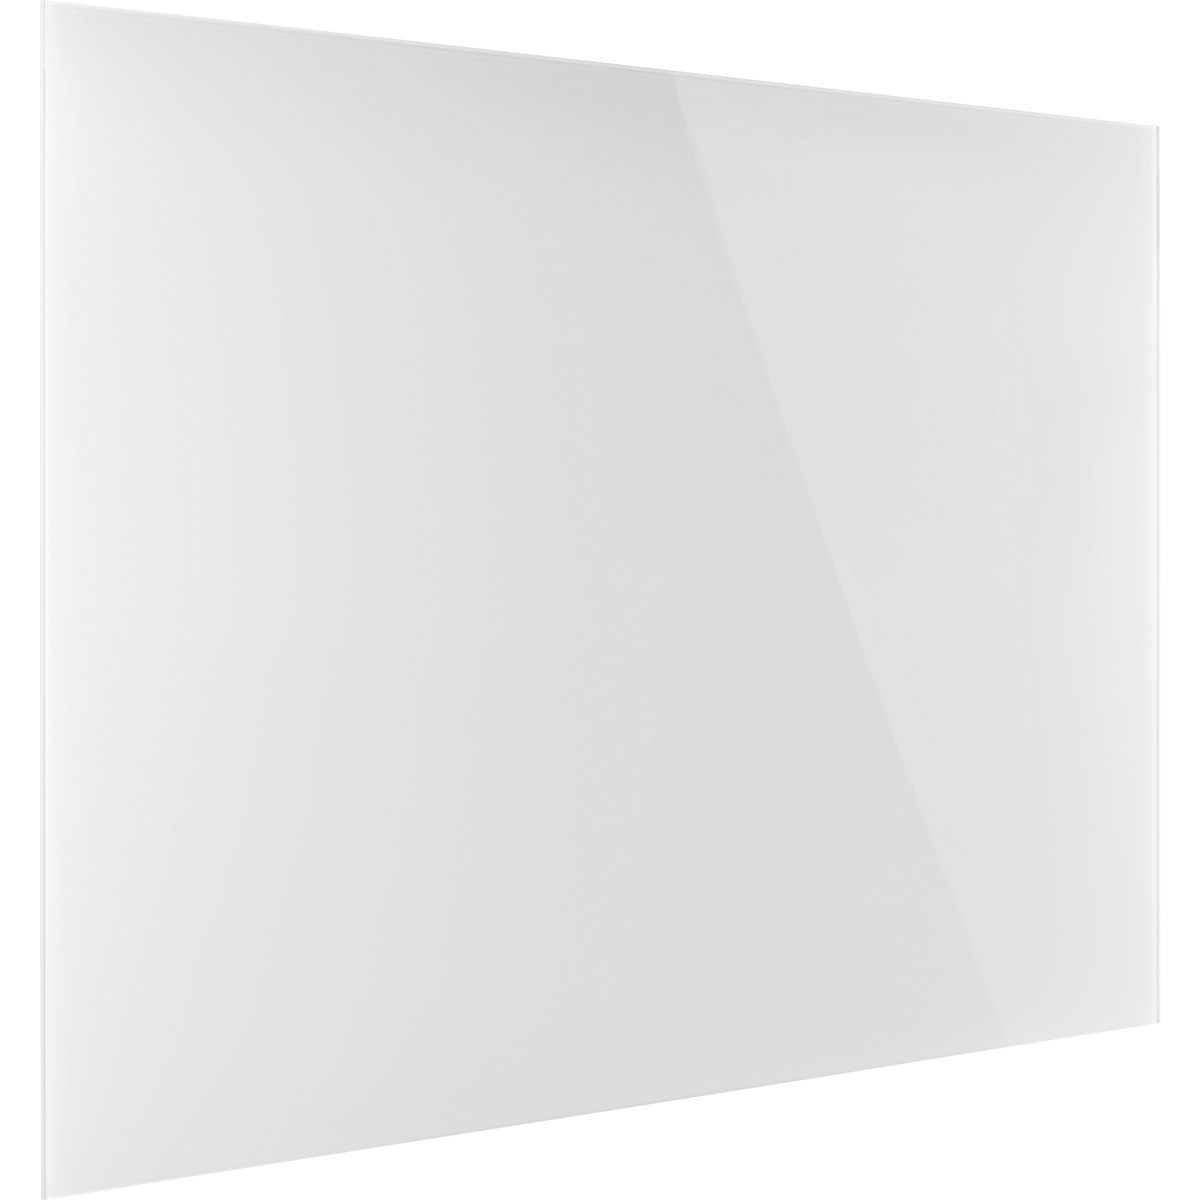 magnetoplan – Dizajnerska staklena ploča, magnetna, ŠxV 1500 x 1000 mm, u briljant bijeloj boji